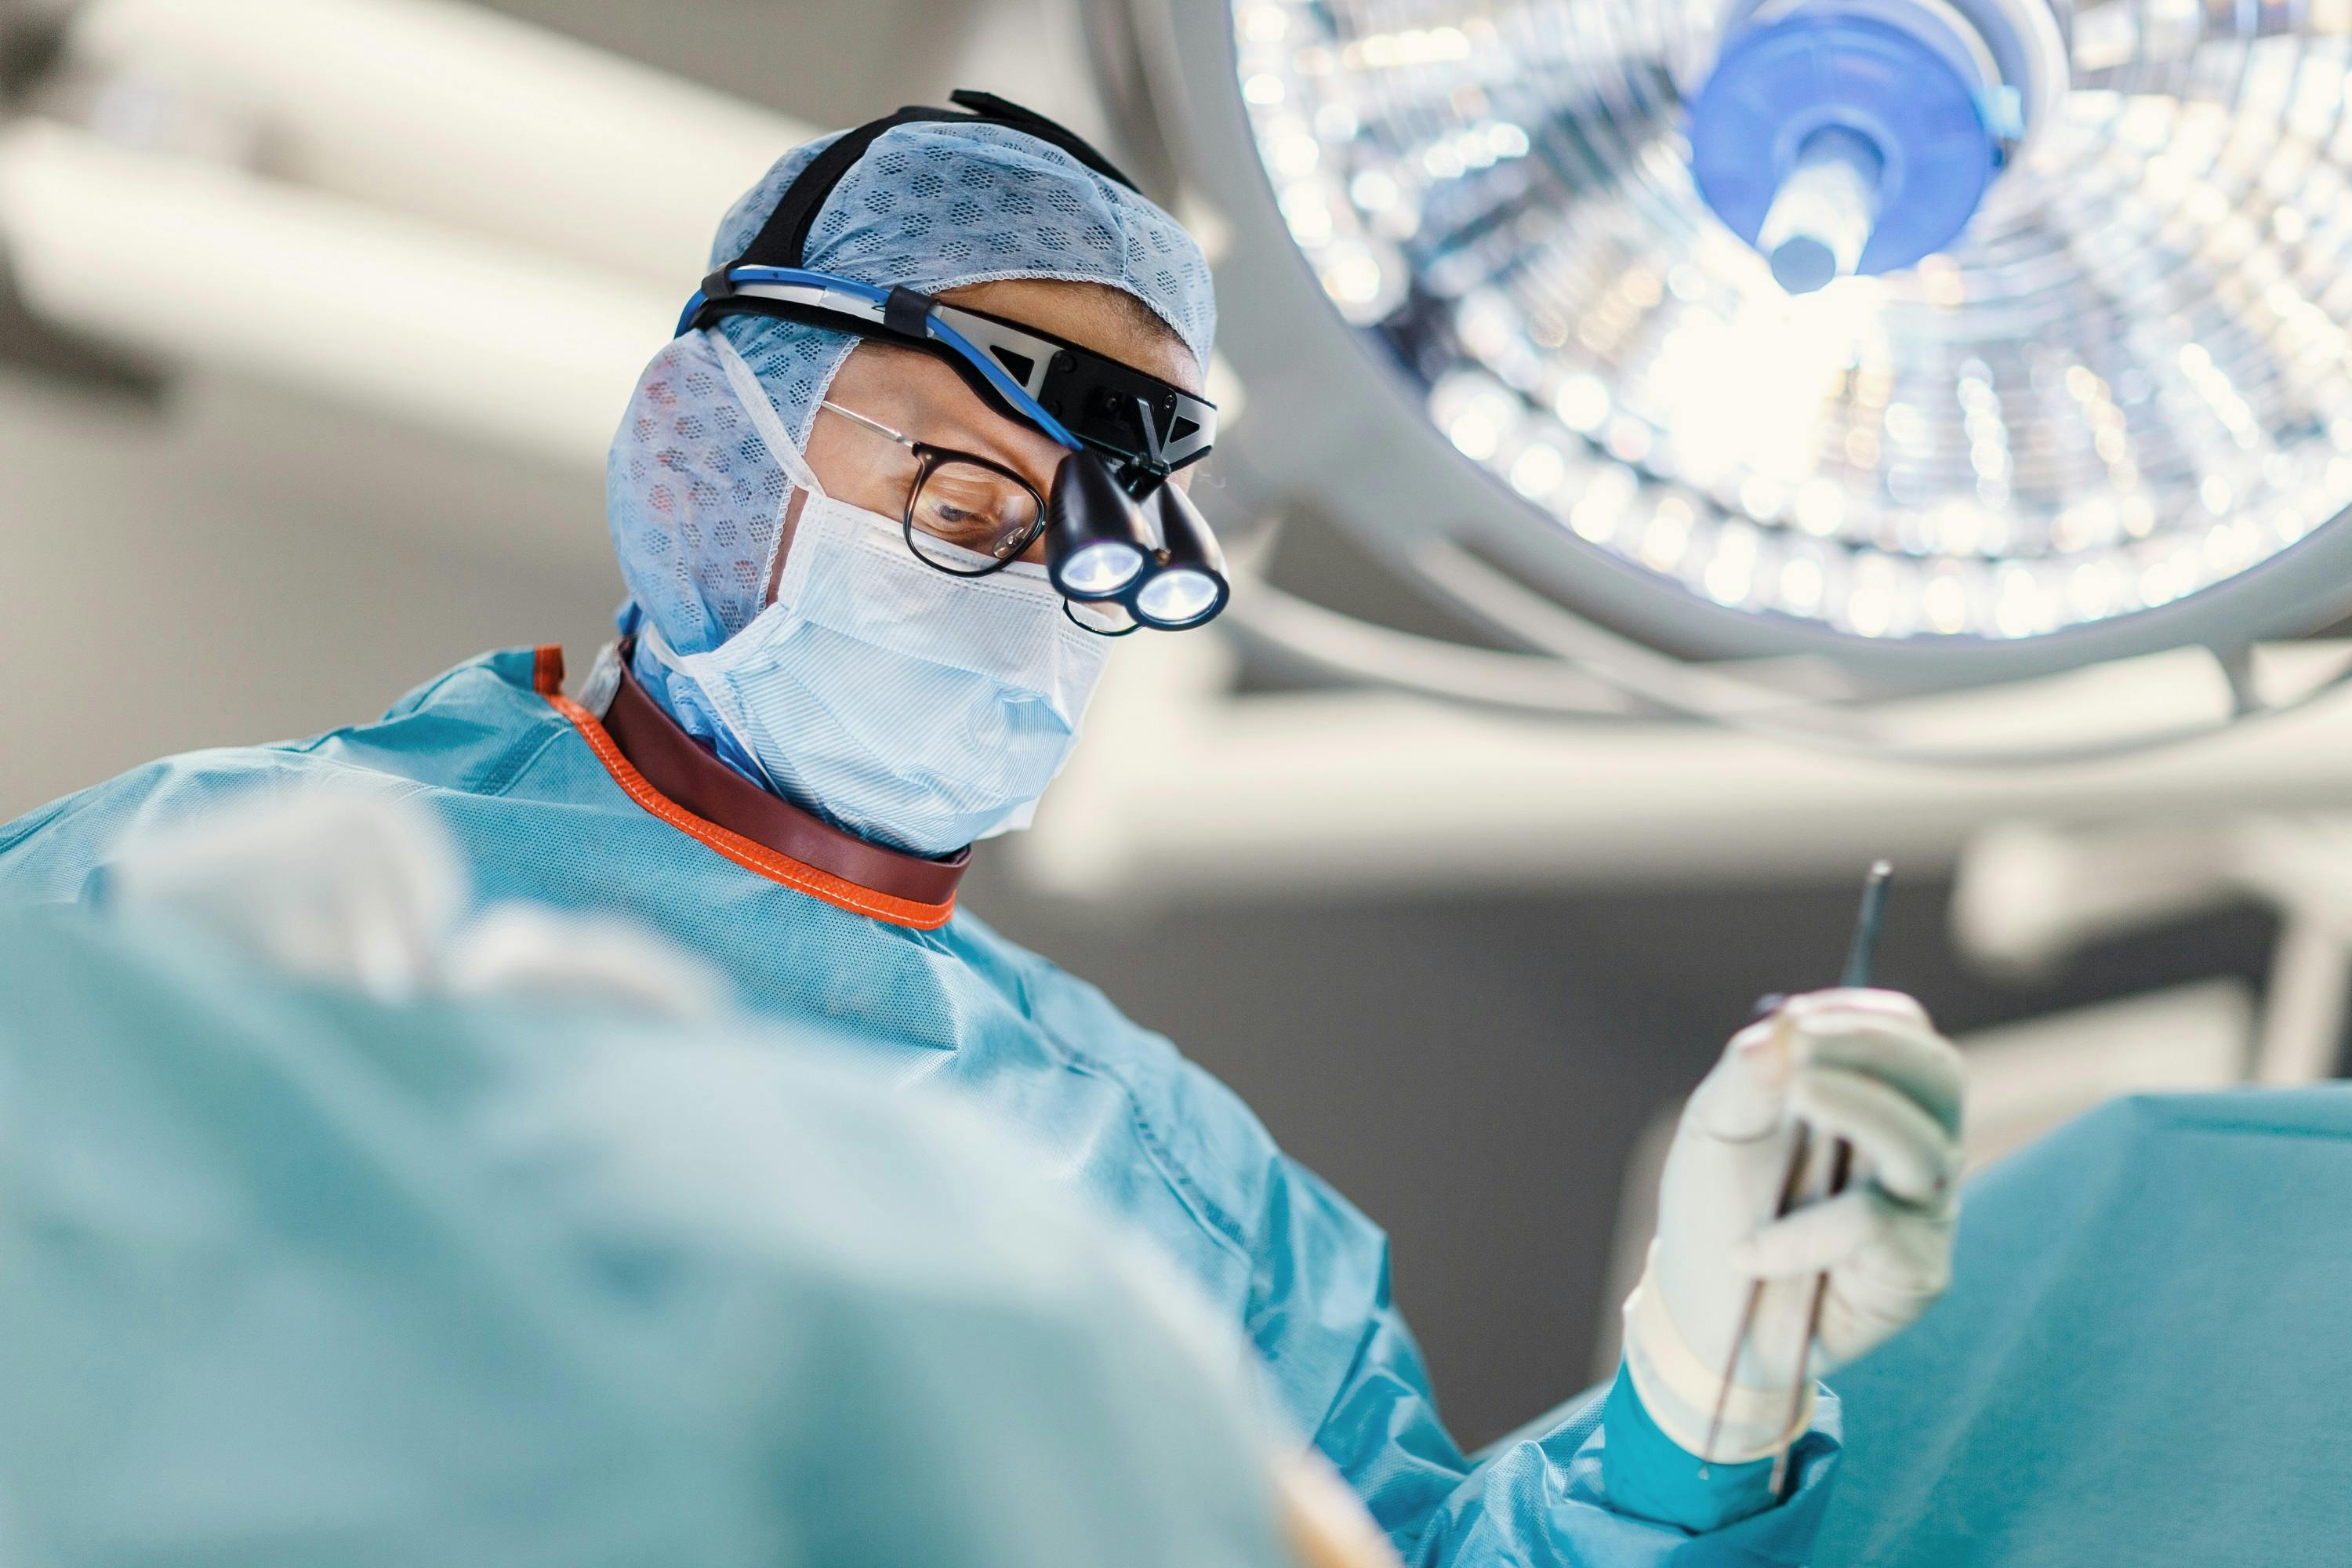 Chirurg in Operationskleidung und mit Lupenbrille bei der Arbeit im OP-Saal.